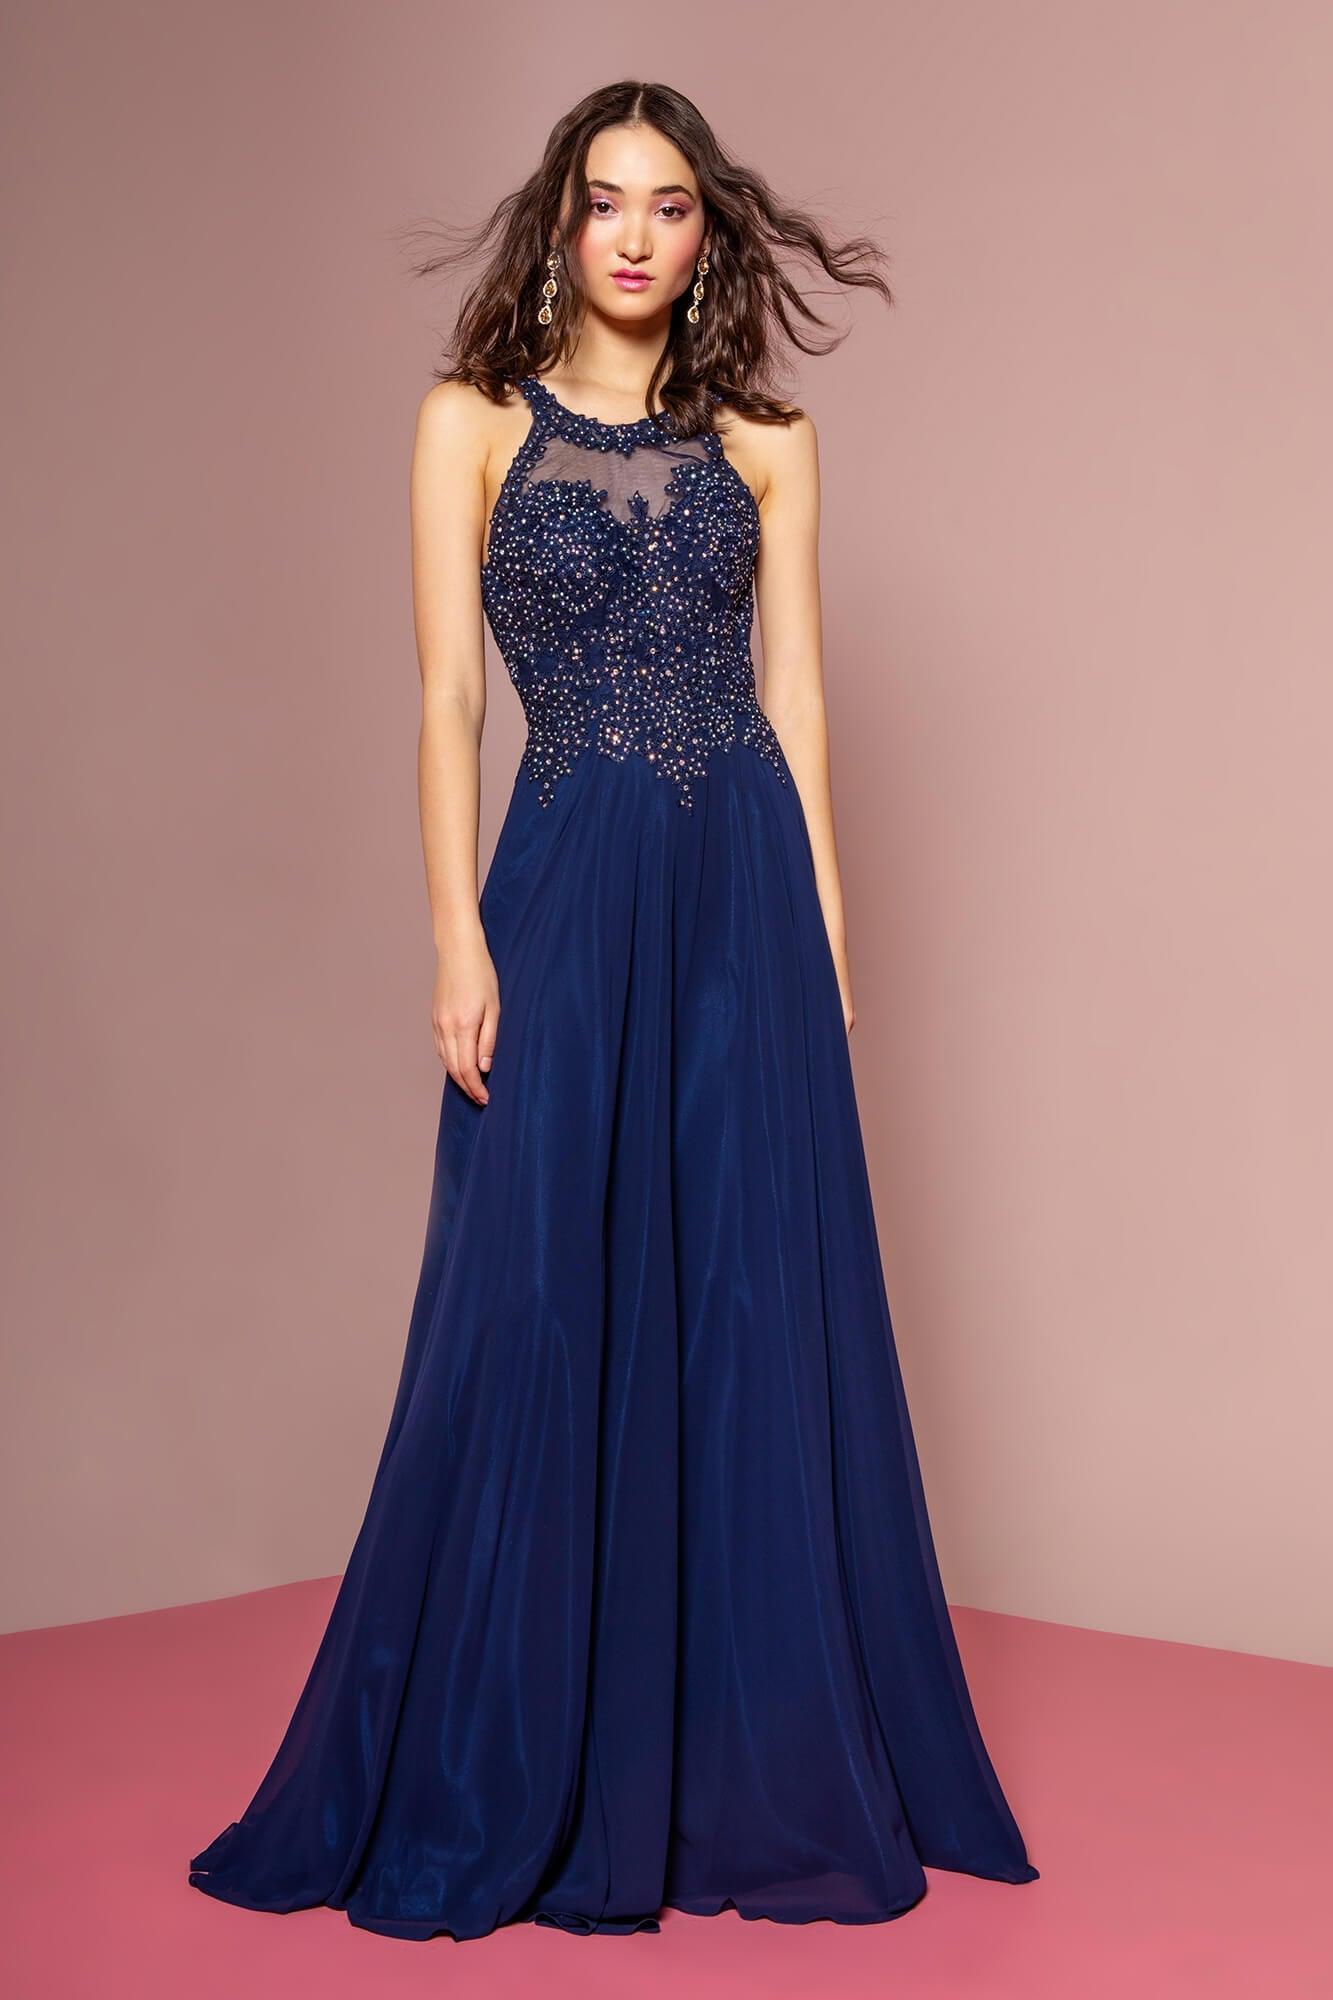 Jewel Embellished Long Prom Dress Formal - The Dress Outlet Elizabeth K